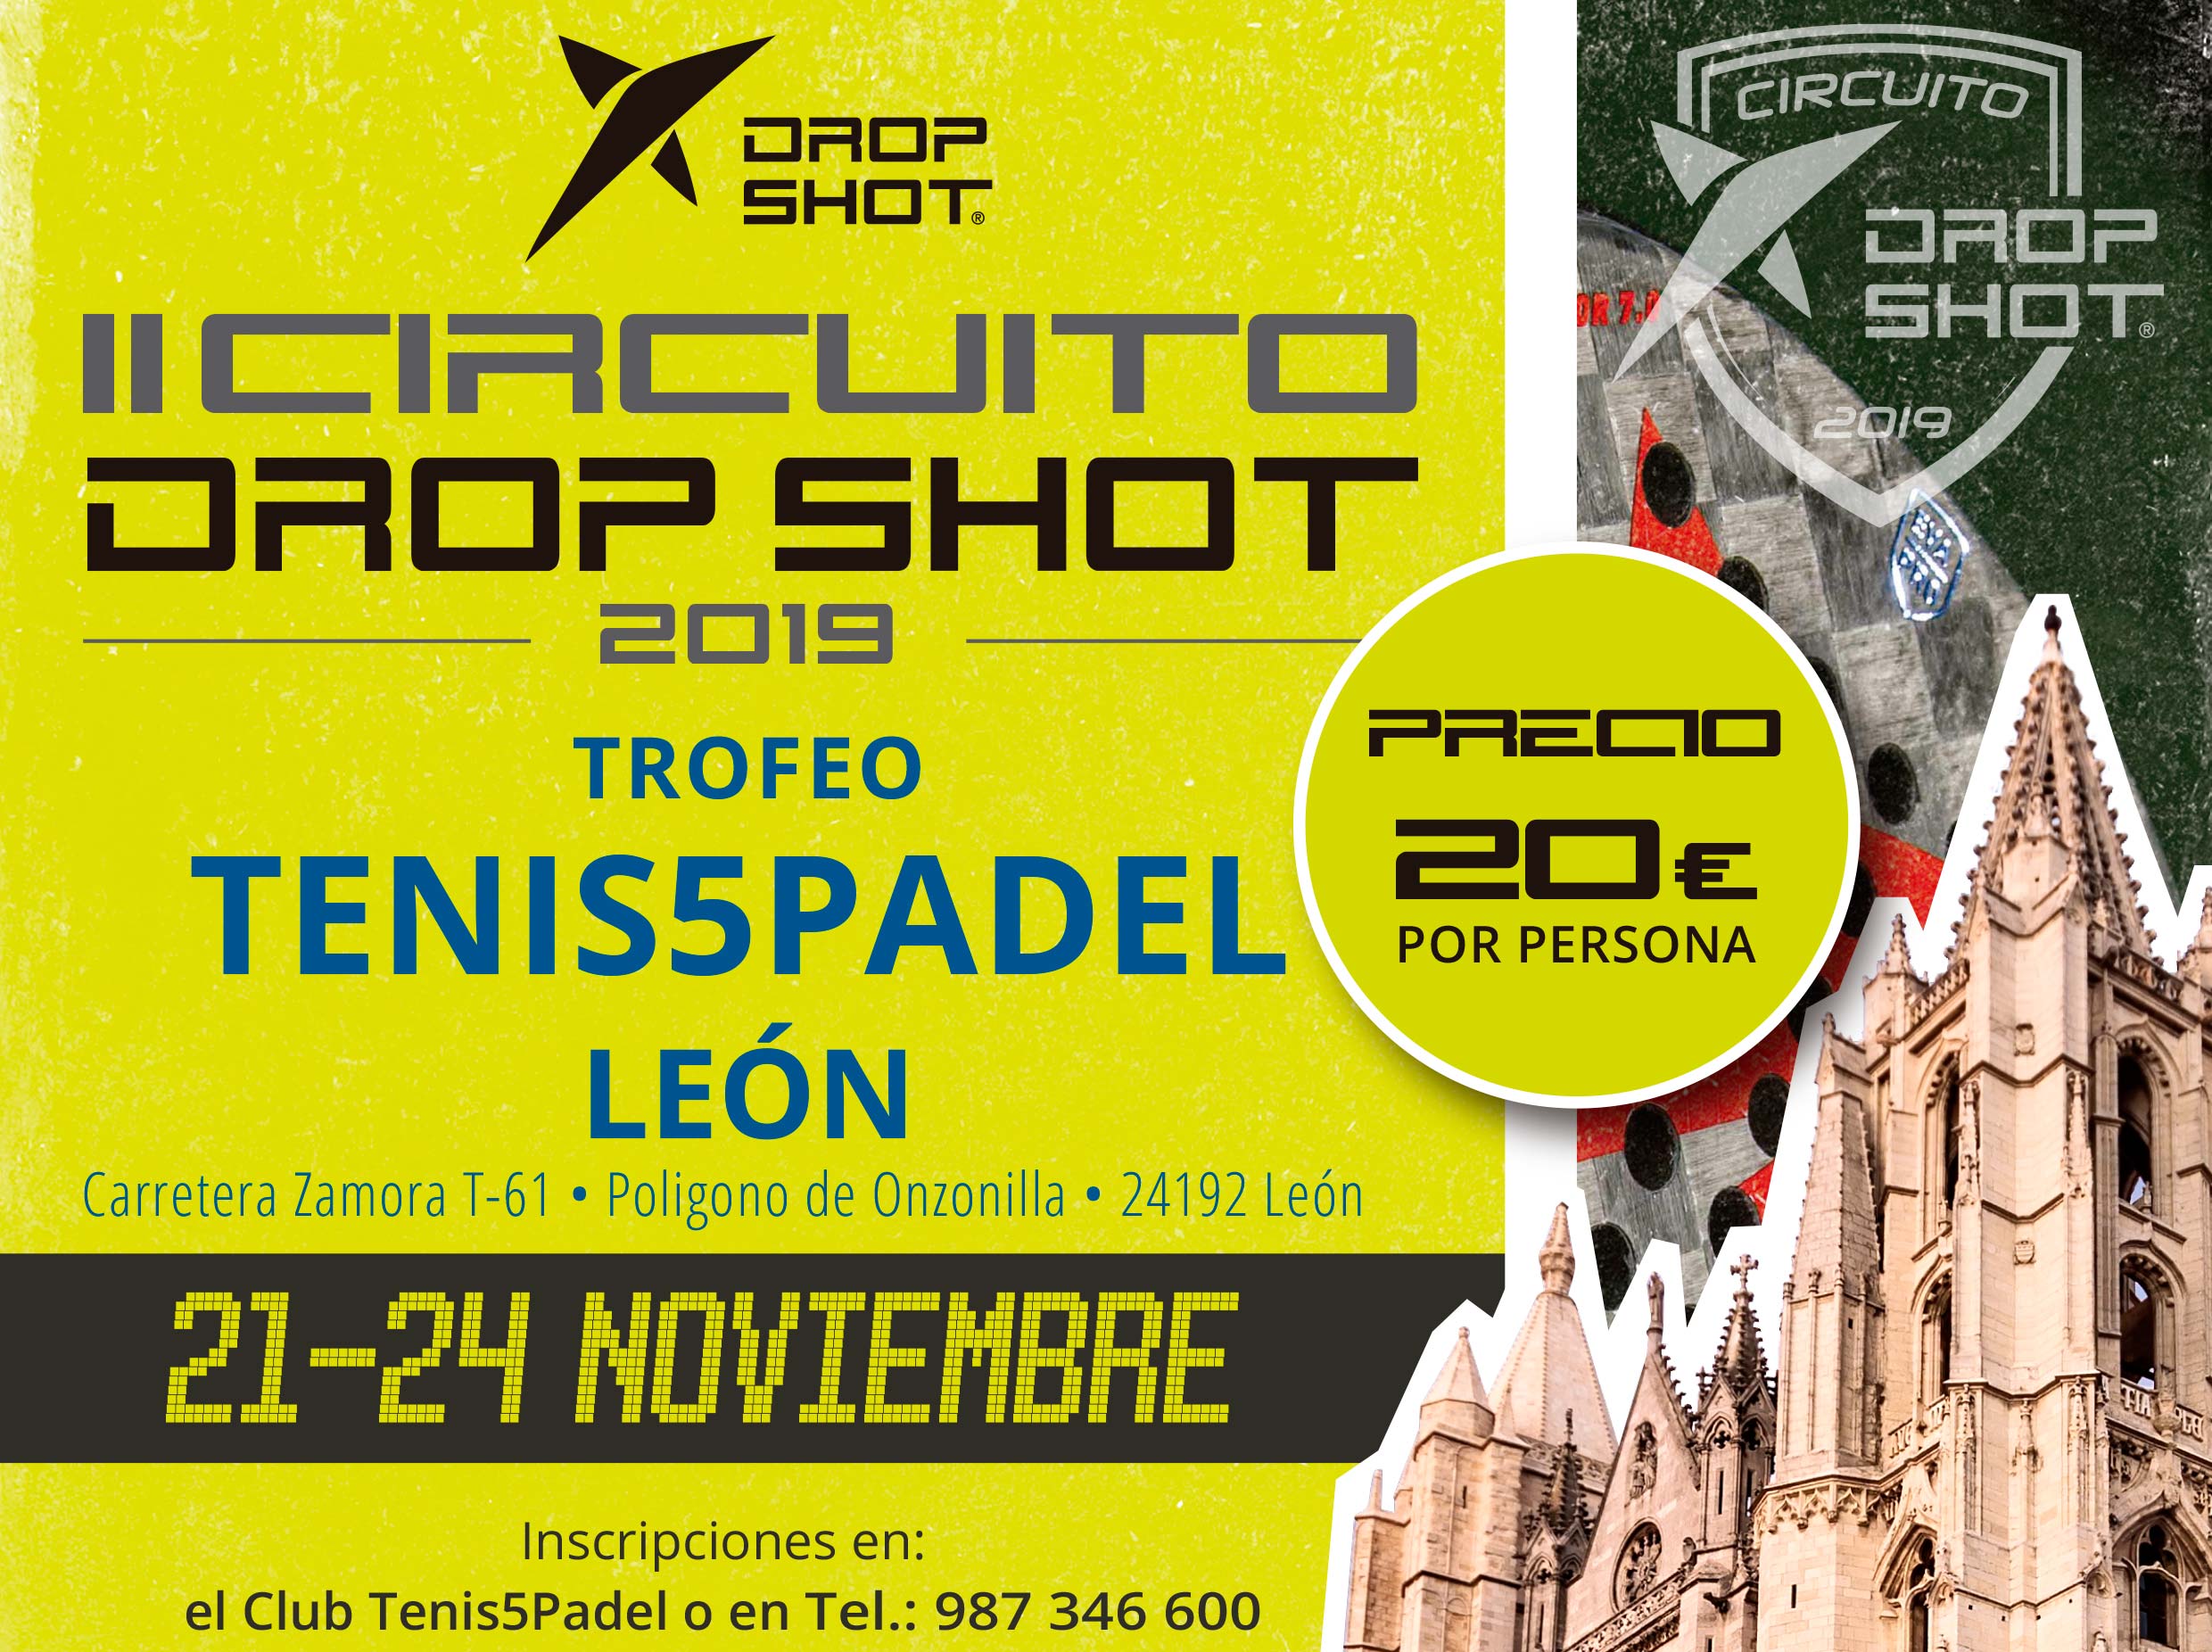 De poster van het II Drop Shot Circuit in zijn test in León.